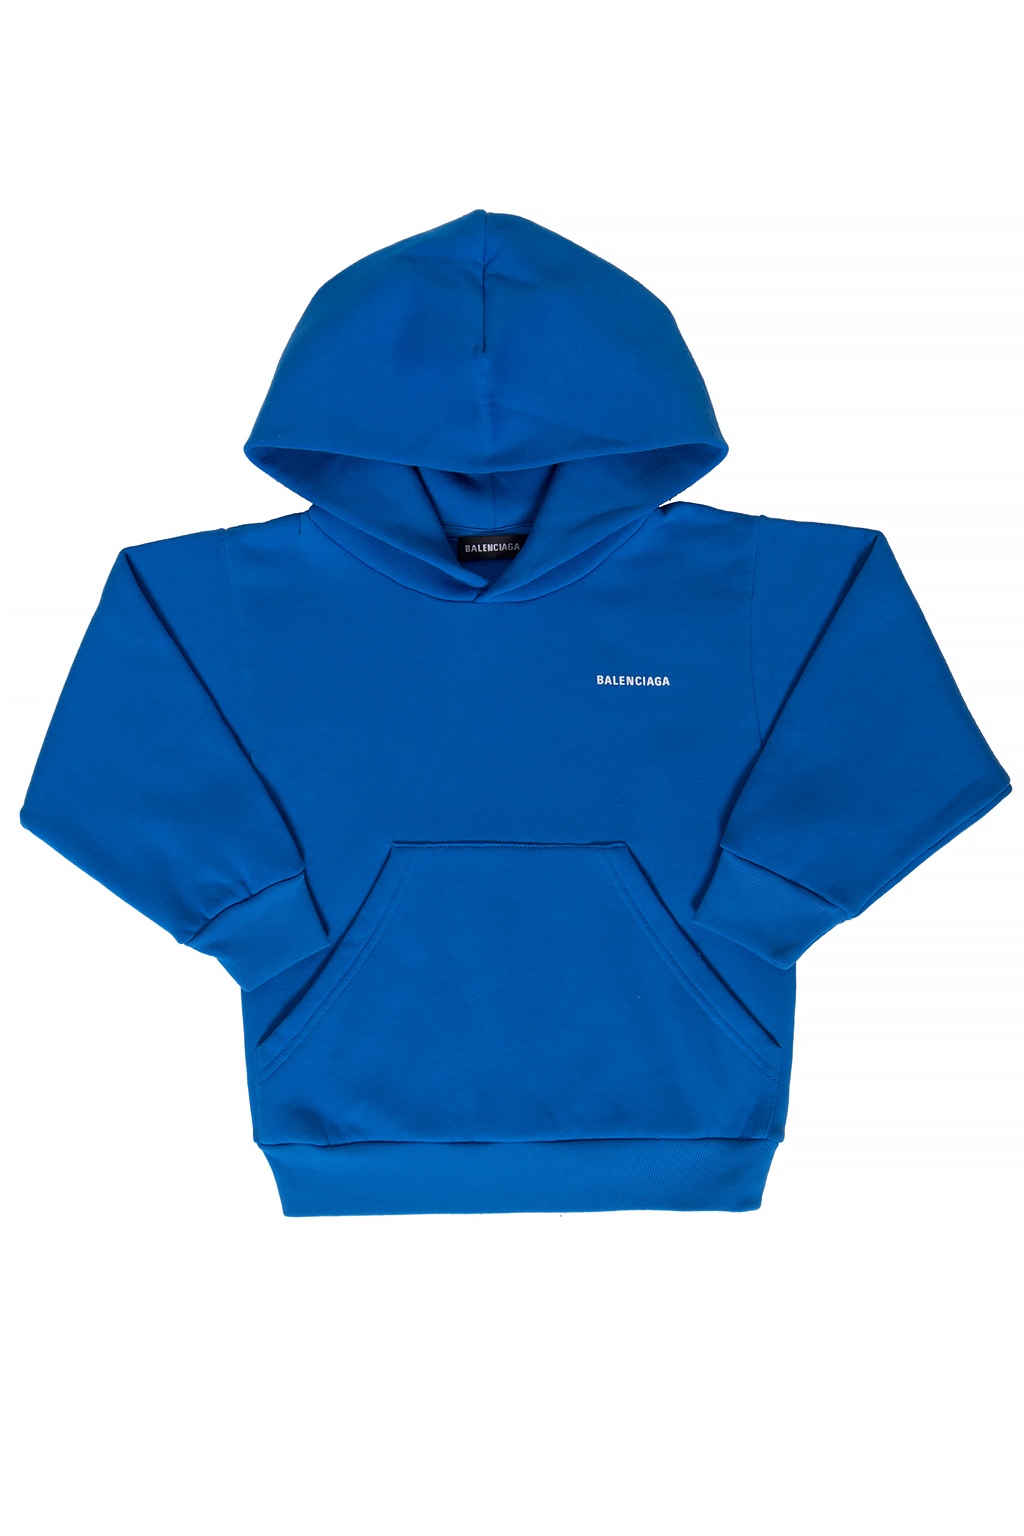 balenciaga blue hoodie